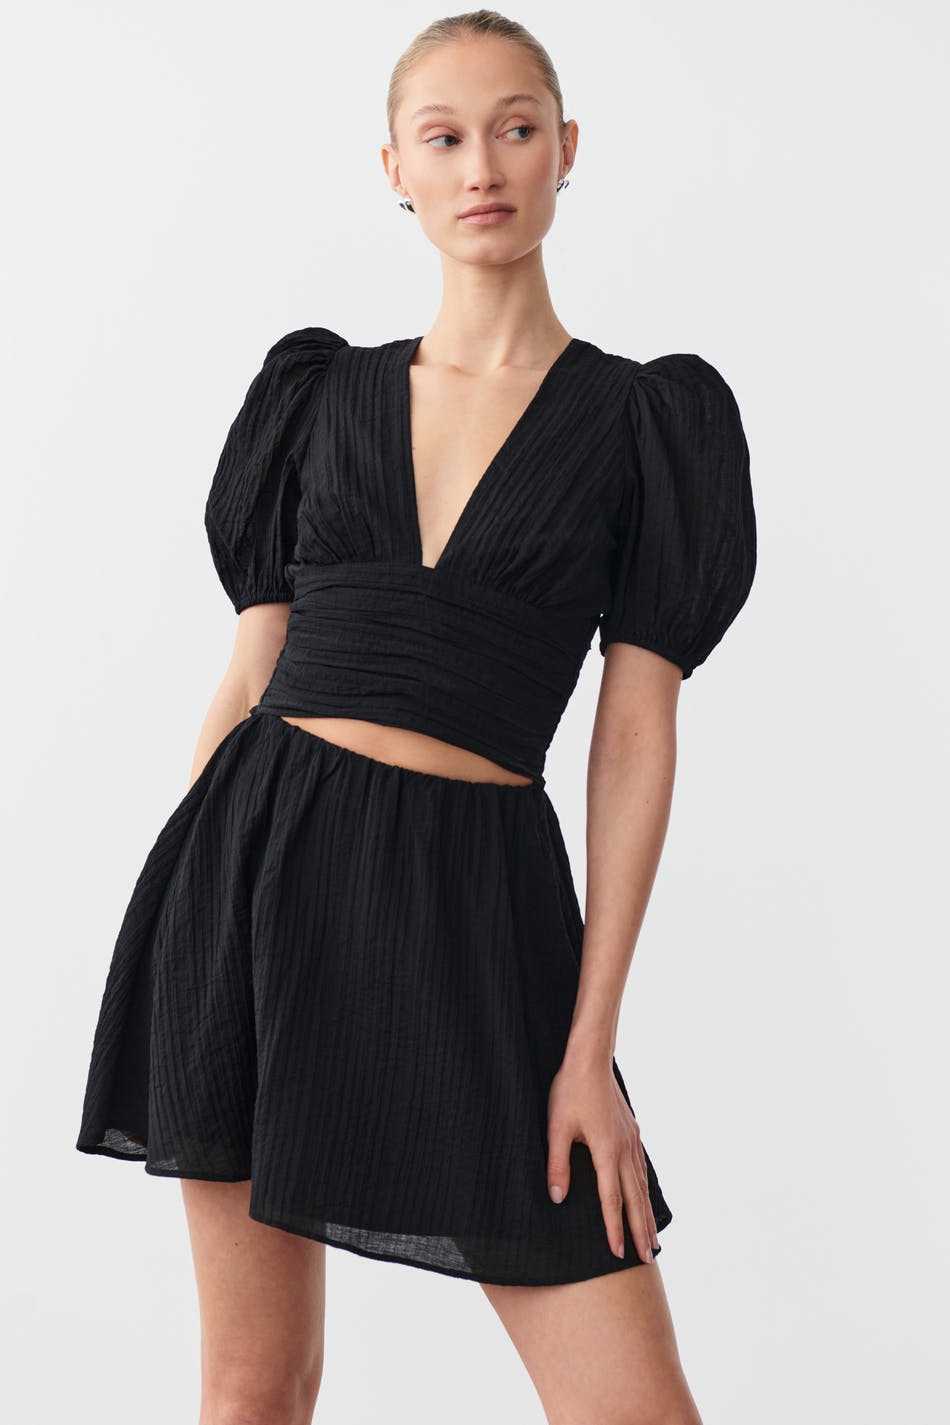 Gina Tricot - Short skirt - kjolar - Black - S - Female